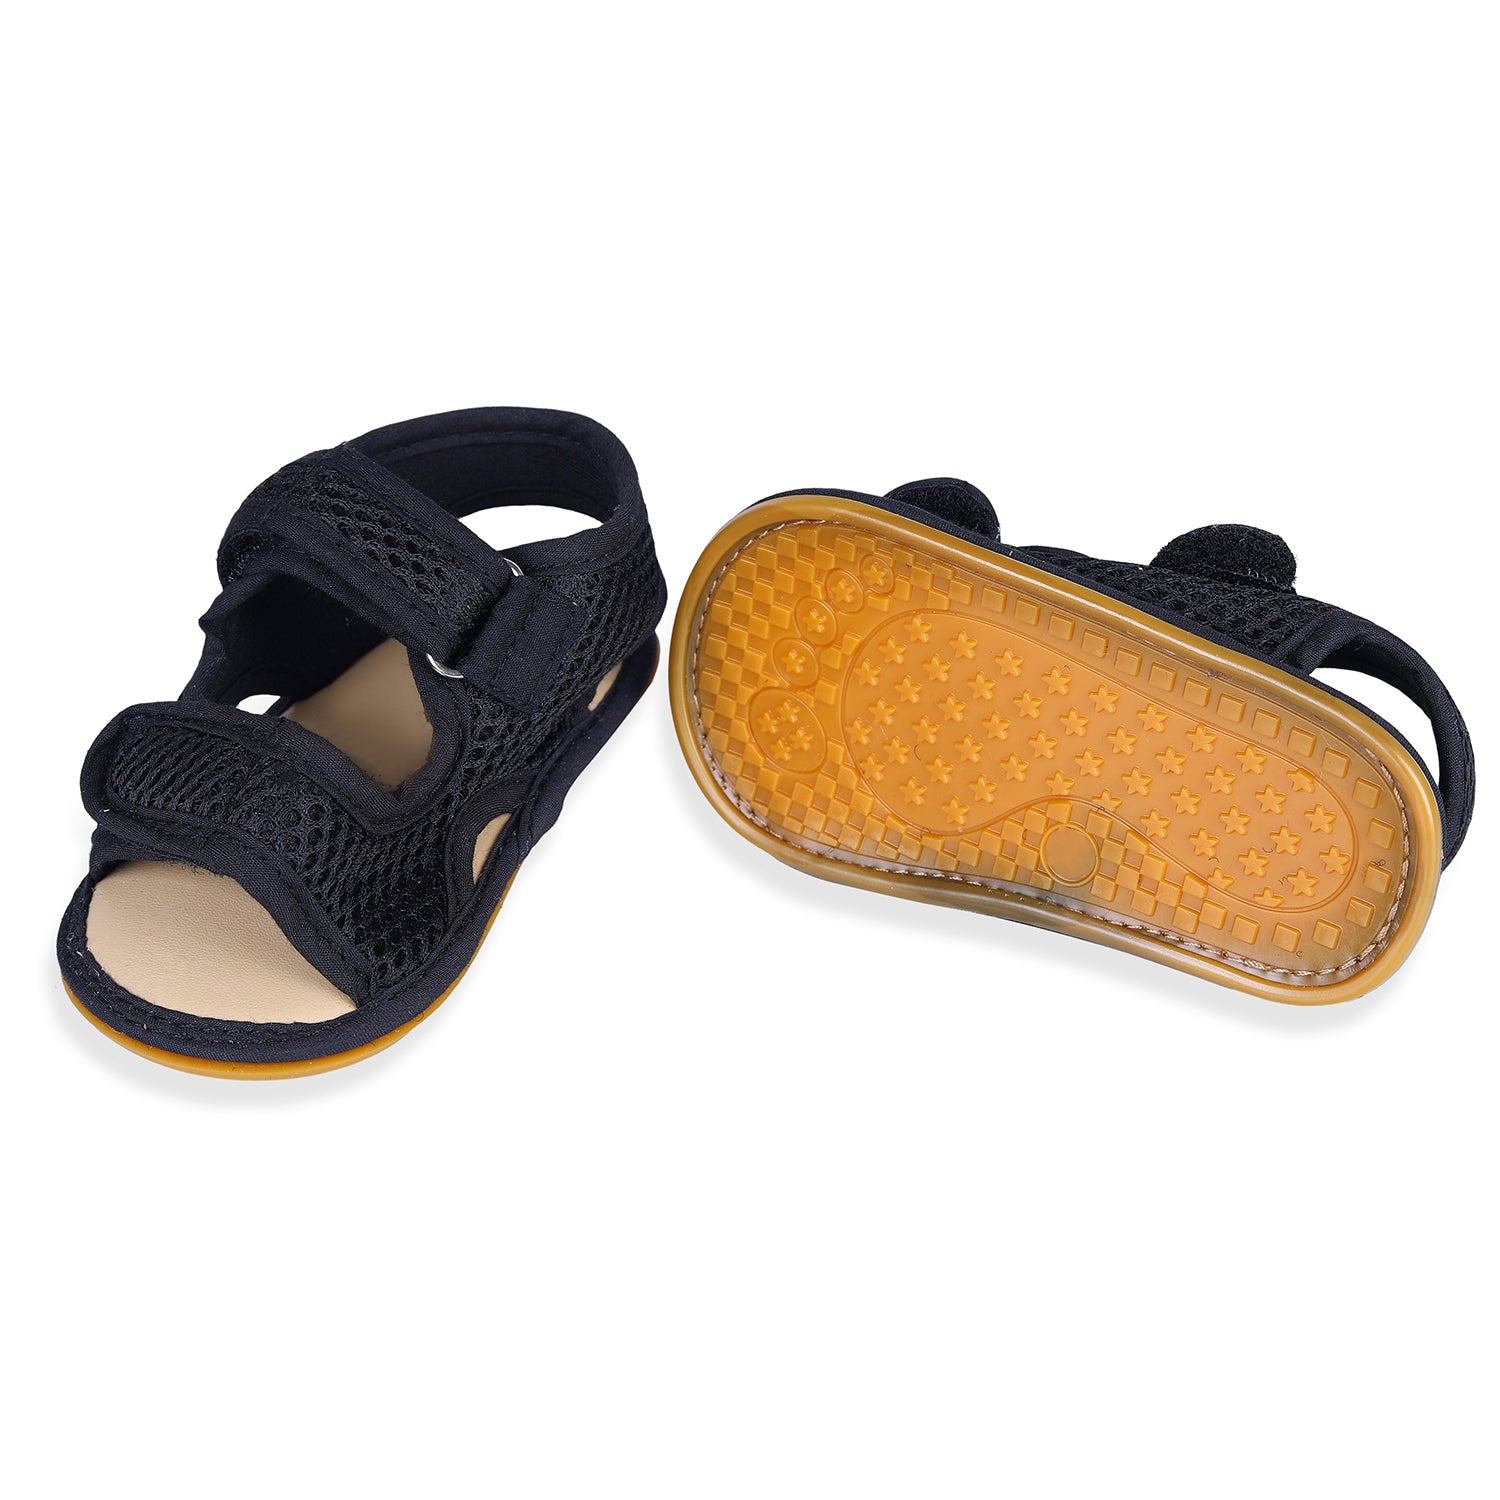 Solid Hookloop Comfortable Anti-skid Floater Sandals - Black - Baby Moo